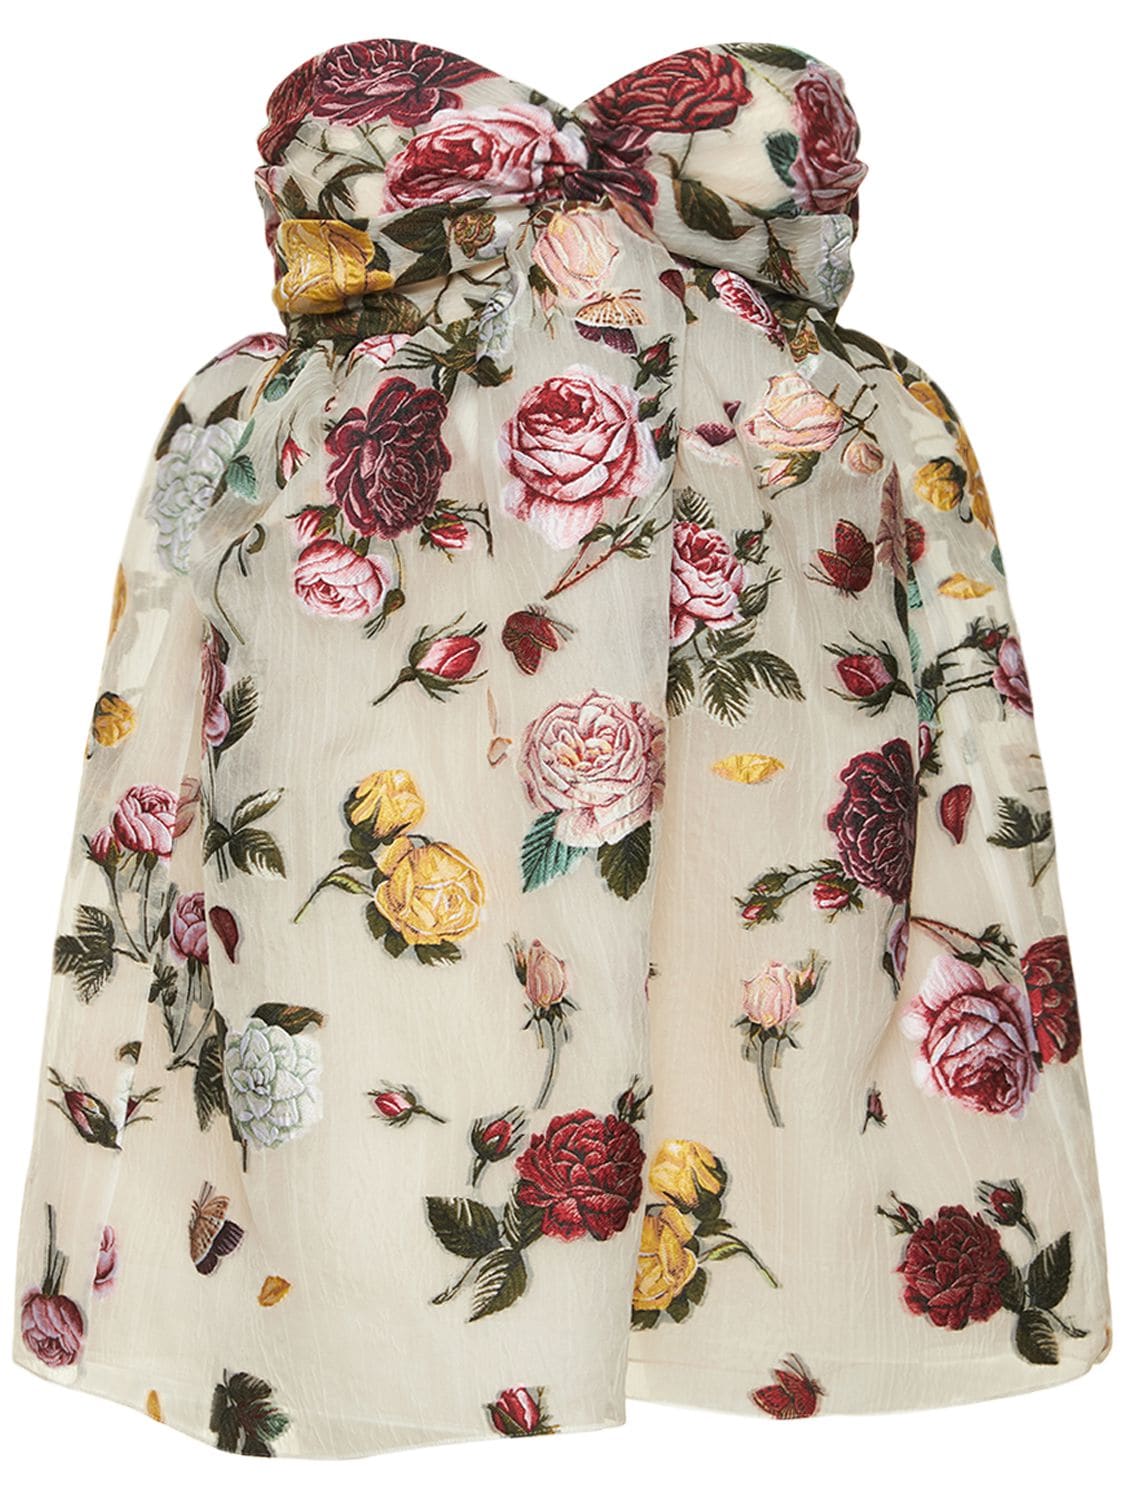 OSCAR DE LA RENTA Jacquard Roses Strapless Mini Dress